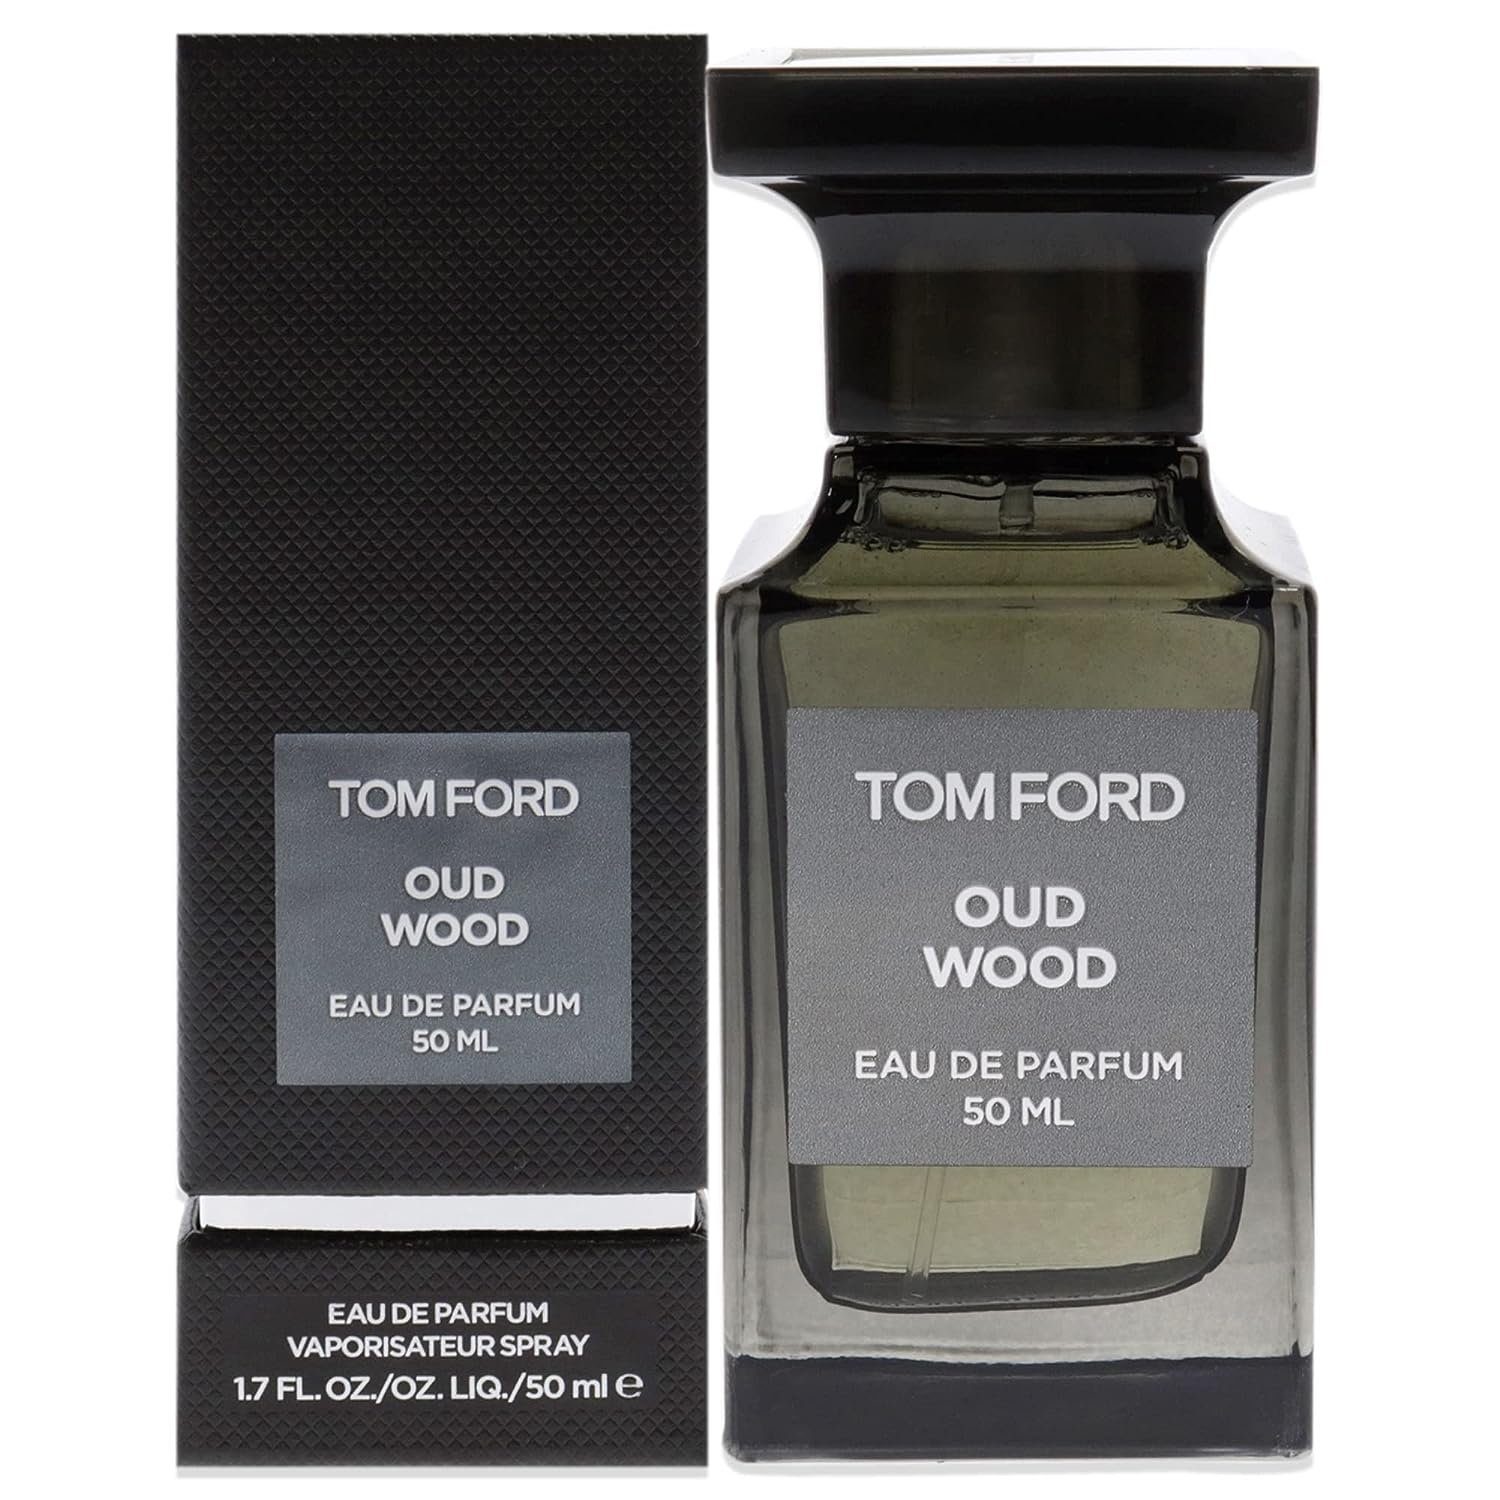 Tom Ford Eau Oud Parfum de Parfum Eau de 50ml Wood